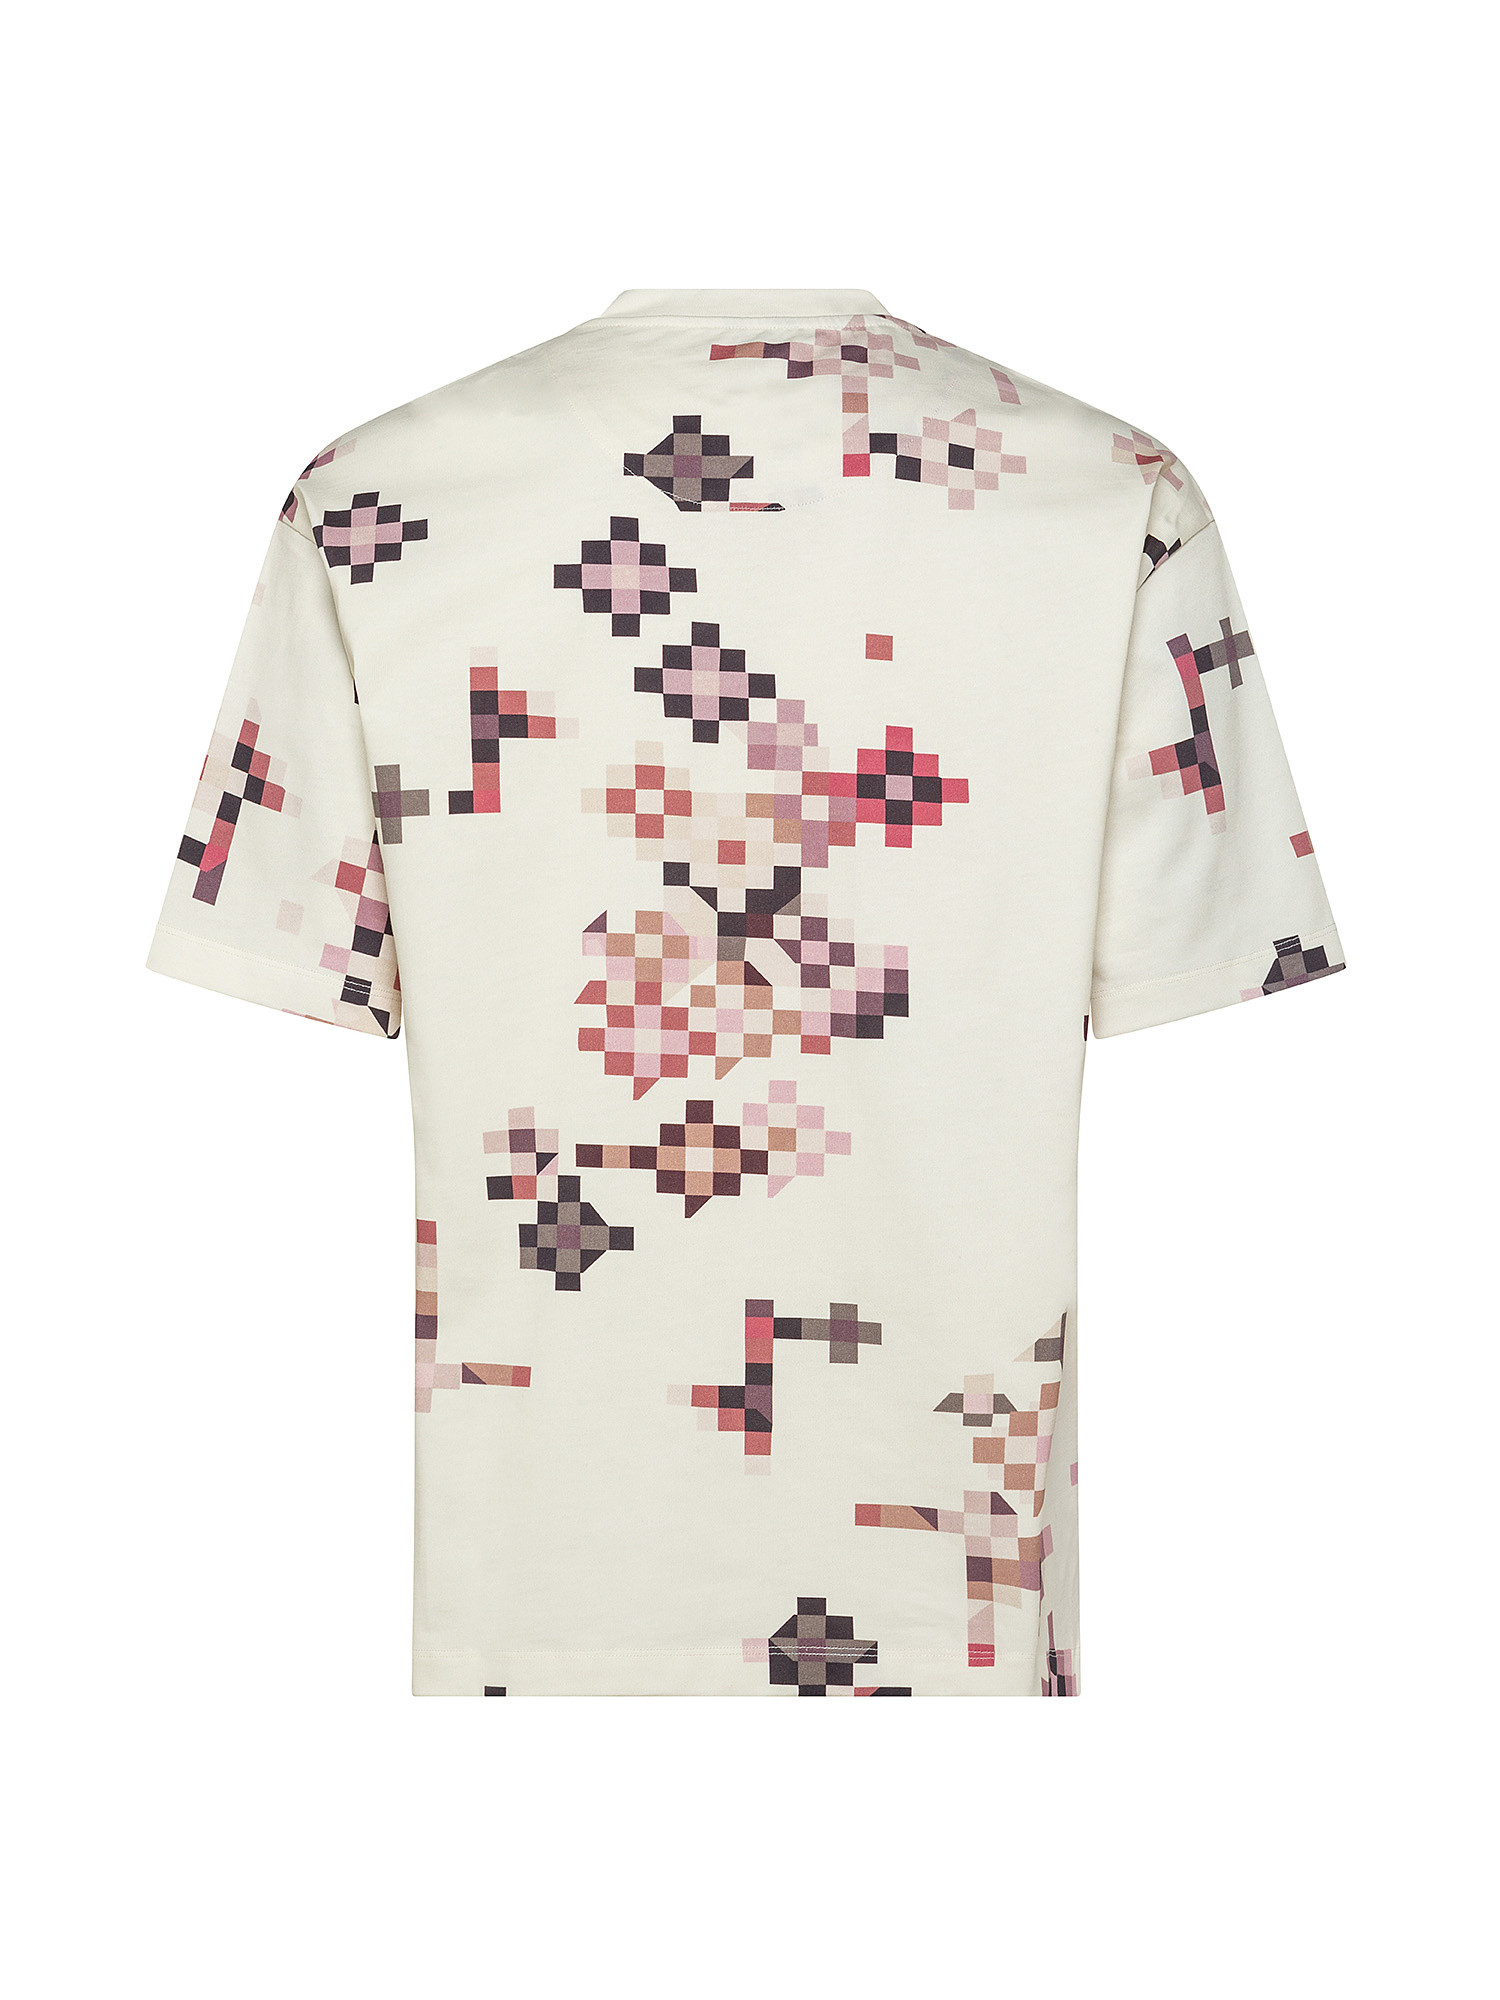 Pixel print T-shirt, White Cream, large image number 1